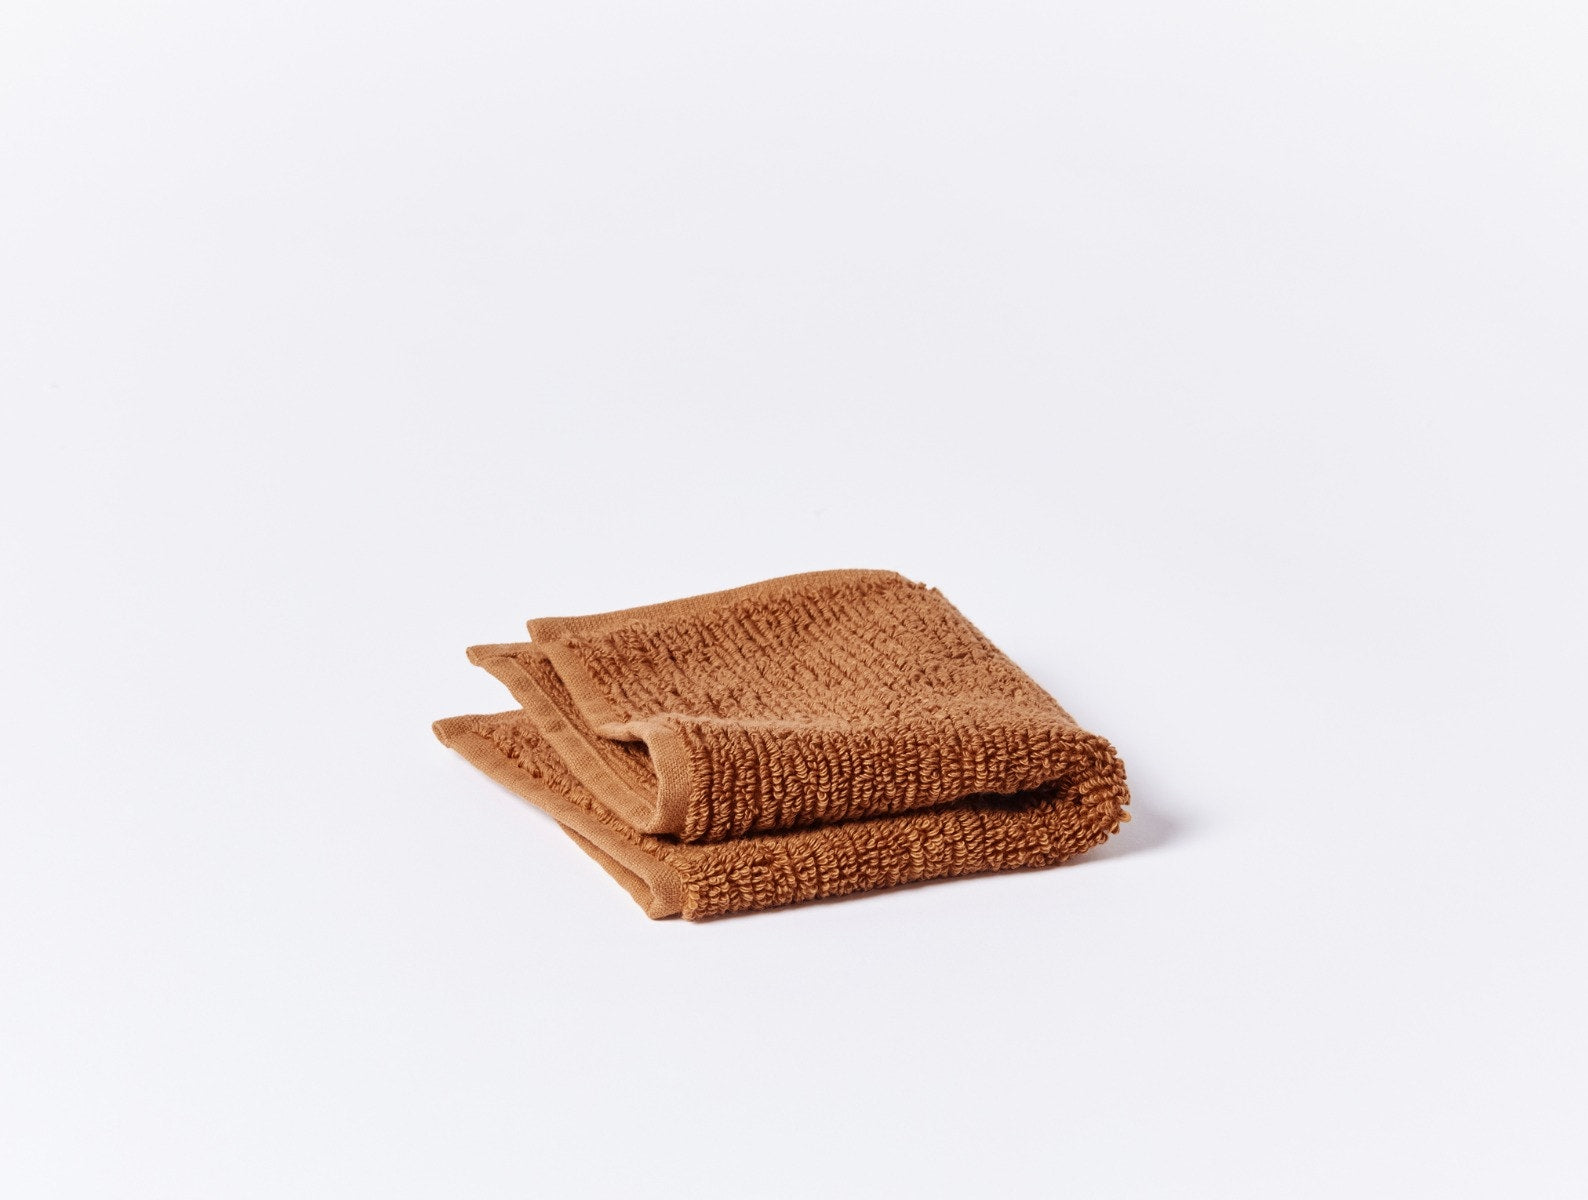 Temescal Terra Organic Bath Towels by Coyuchi